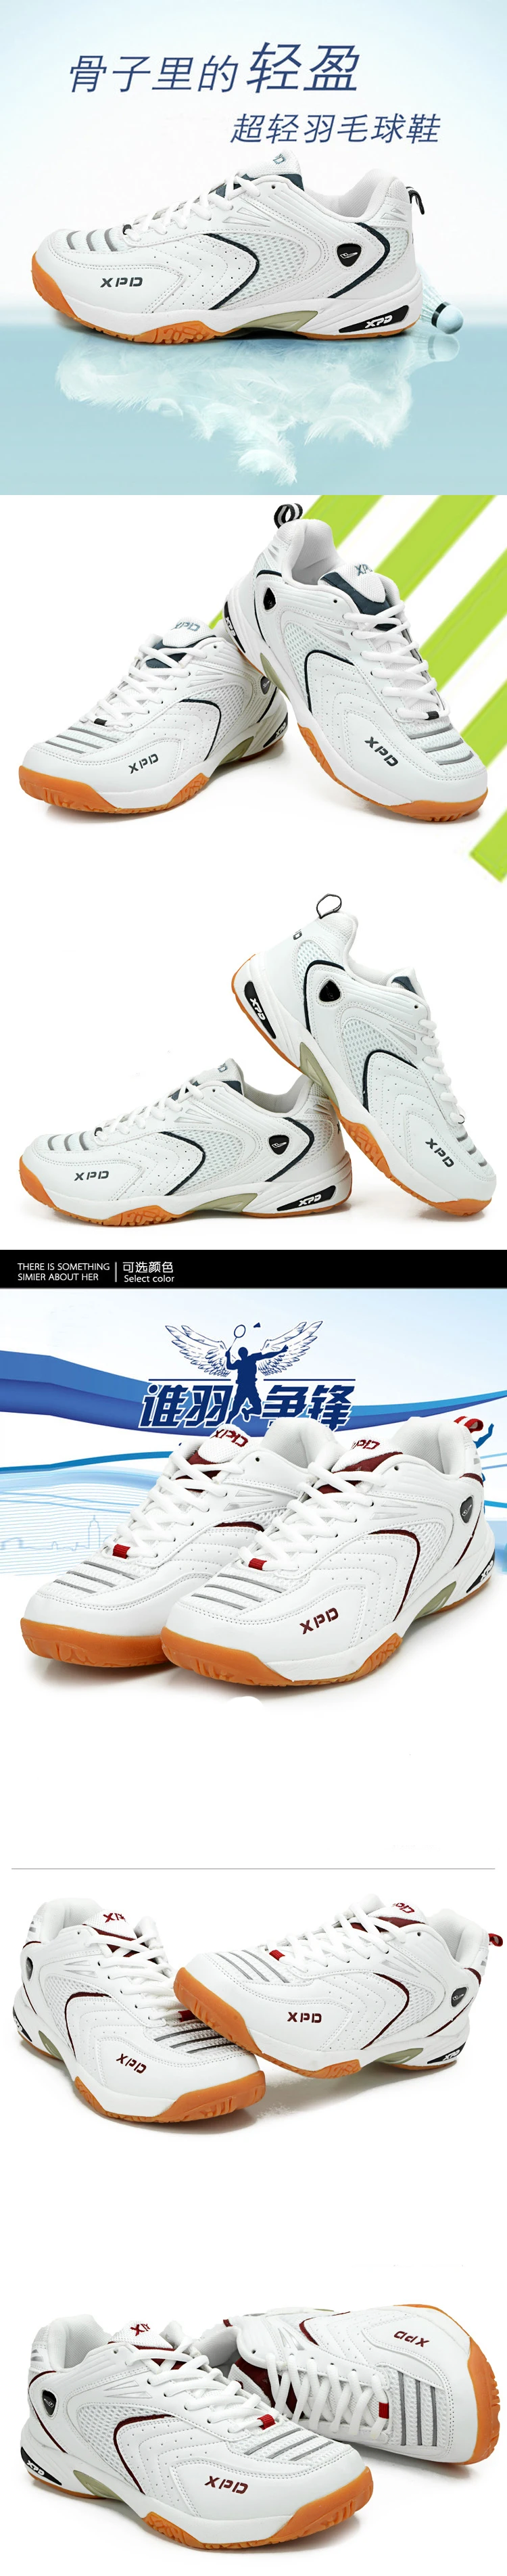 Mr. nut/Новинка; профессиональная обувь для волейбола; обувь для бадминтона; нескользящие кроссовки для тренировок; дышащая Спортивная обувь; размеры 5,5-10